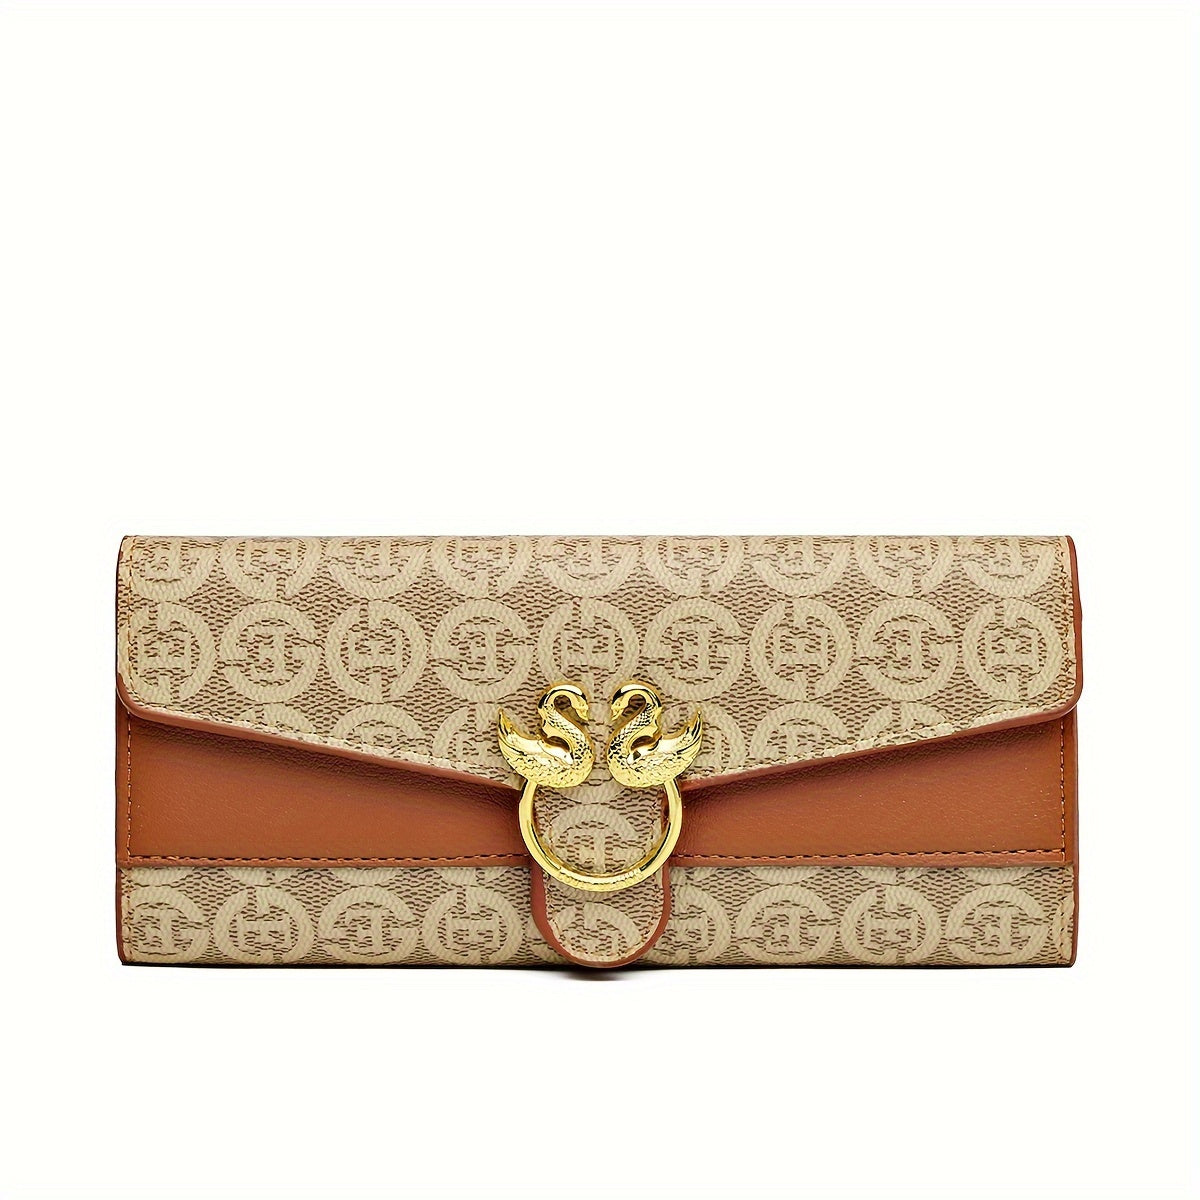 Vintage Designer Print Clutch Wallet, PU Leather Women's Purse, Card Holder, Elegant Evening Bag